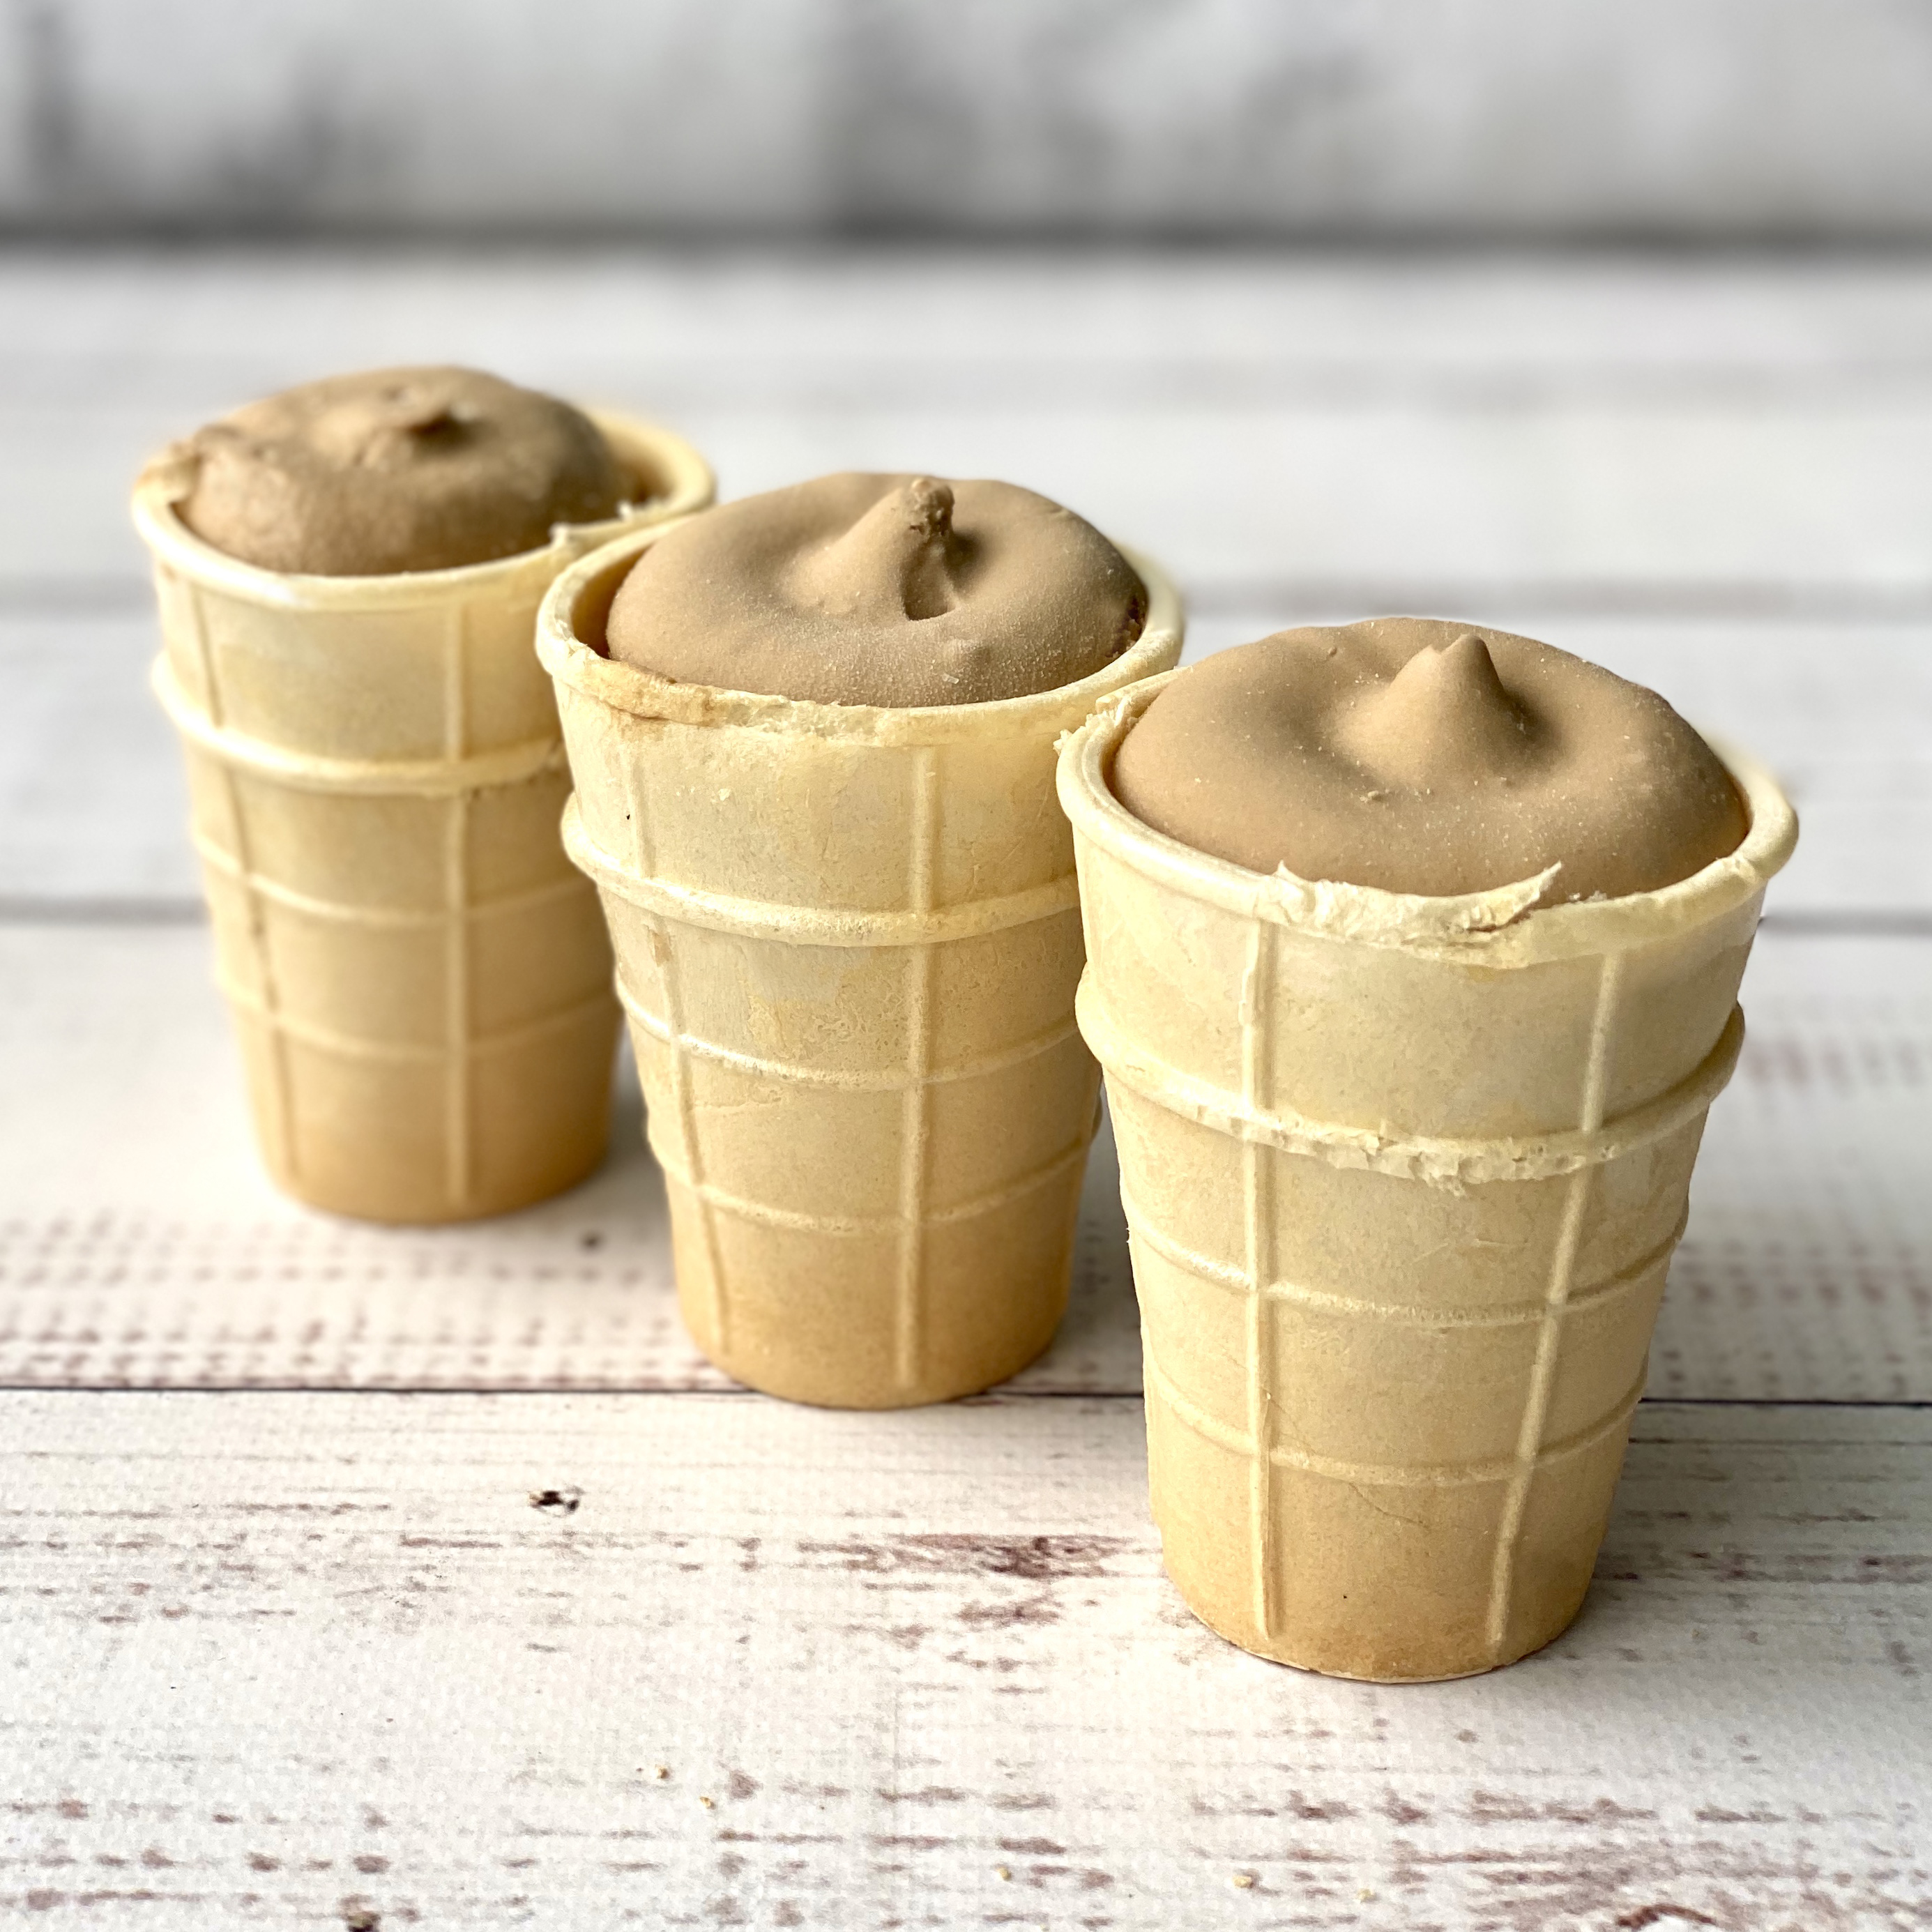 Мороженое крем-брюле в вафельном стаканчике с ЗМЖ изображение 3